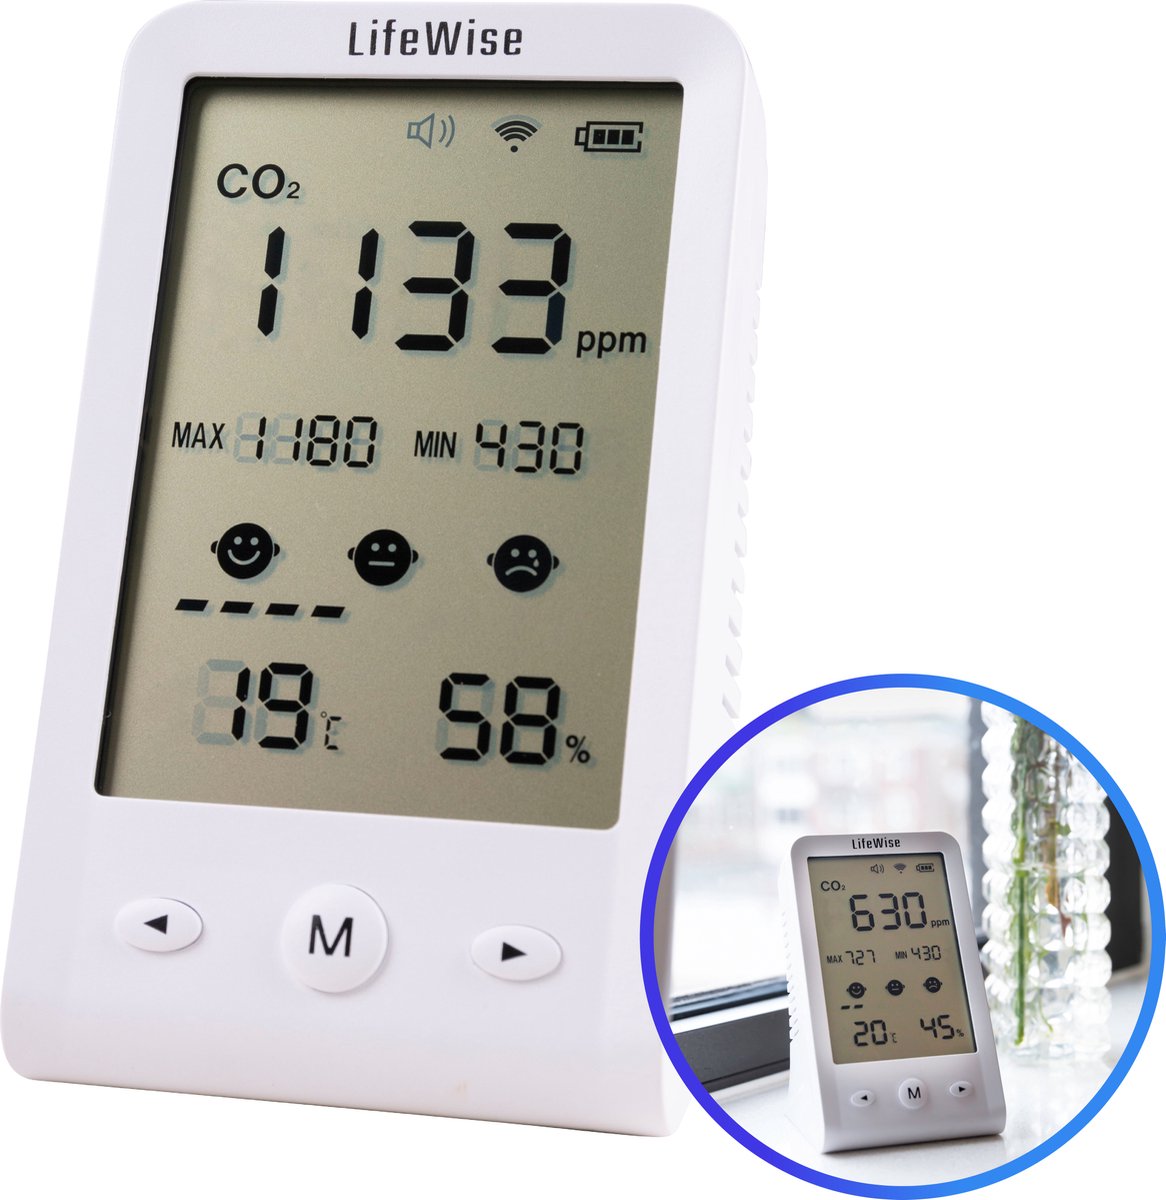 LifeWise CO2 Meter